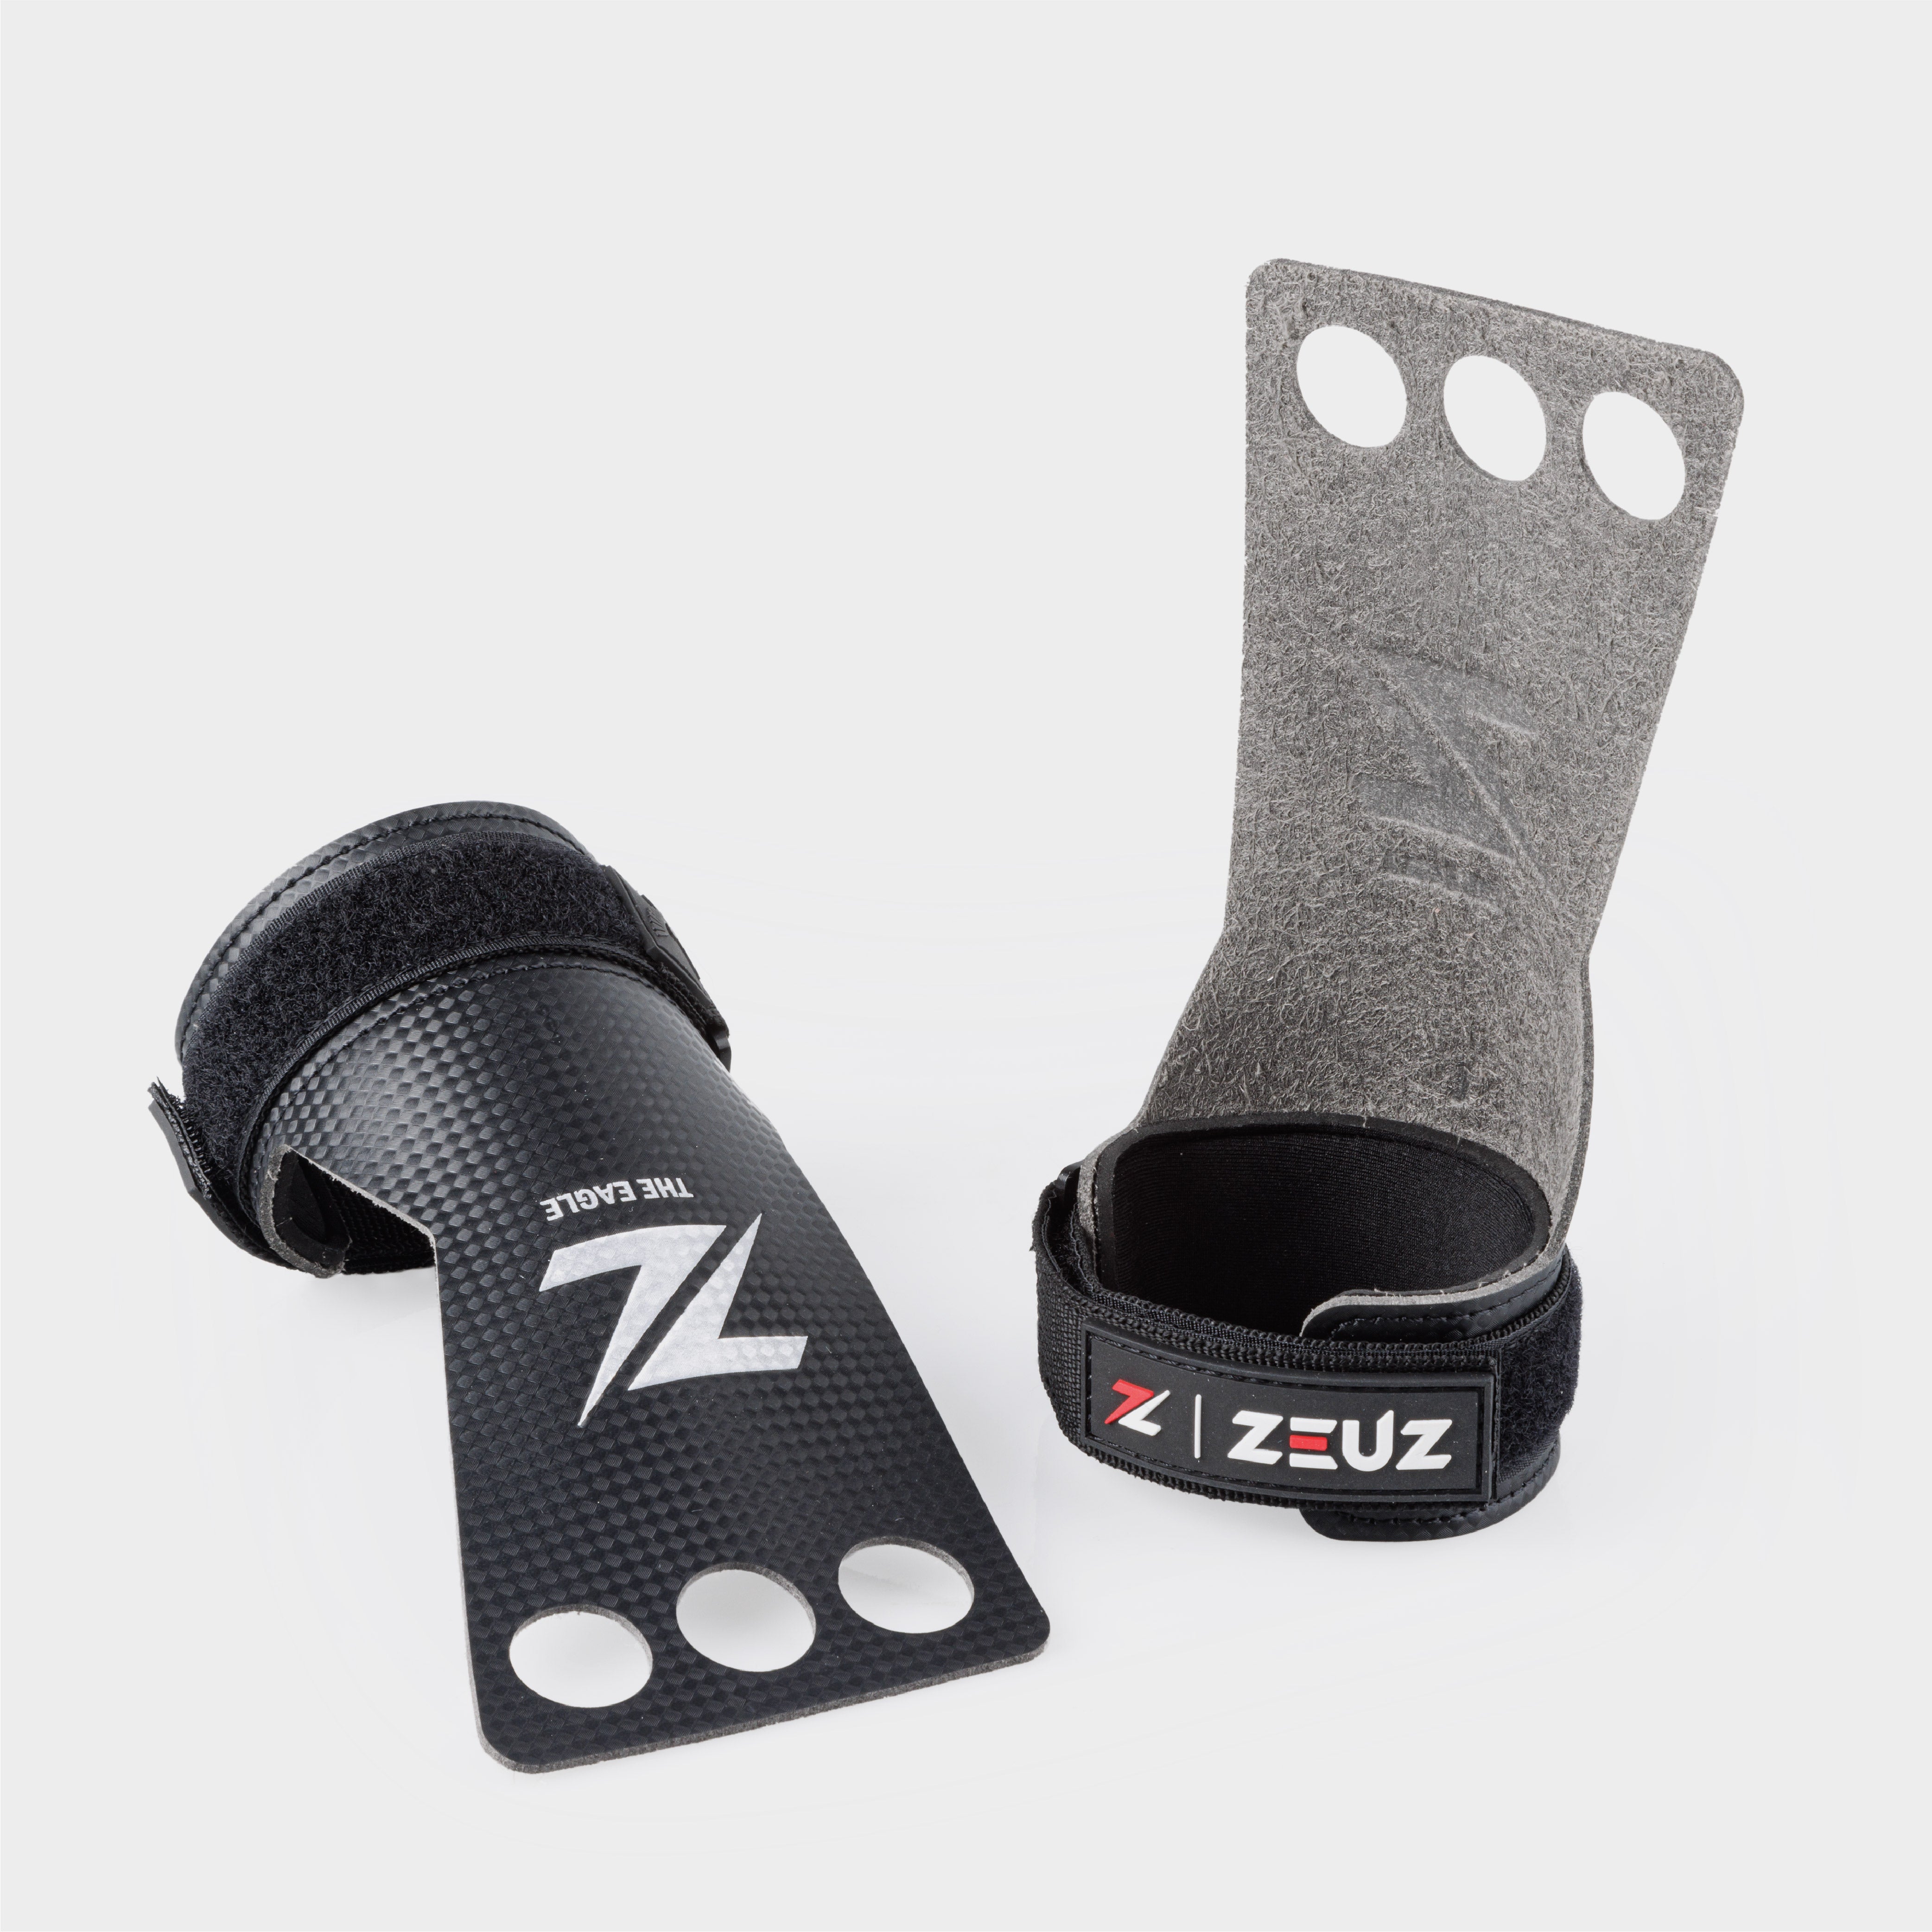 ZEUZ Fitness & Crossfit Carbon & Microfiber Grips